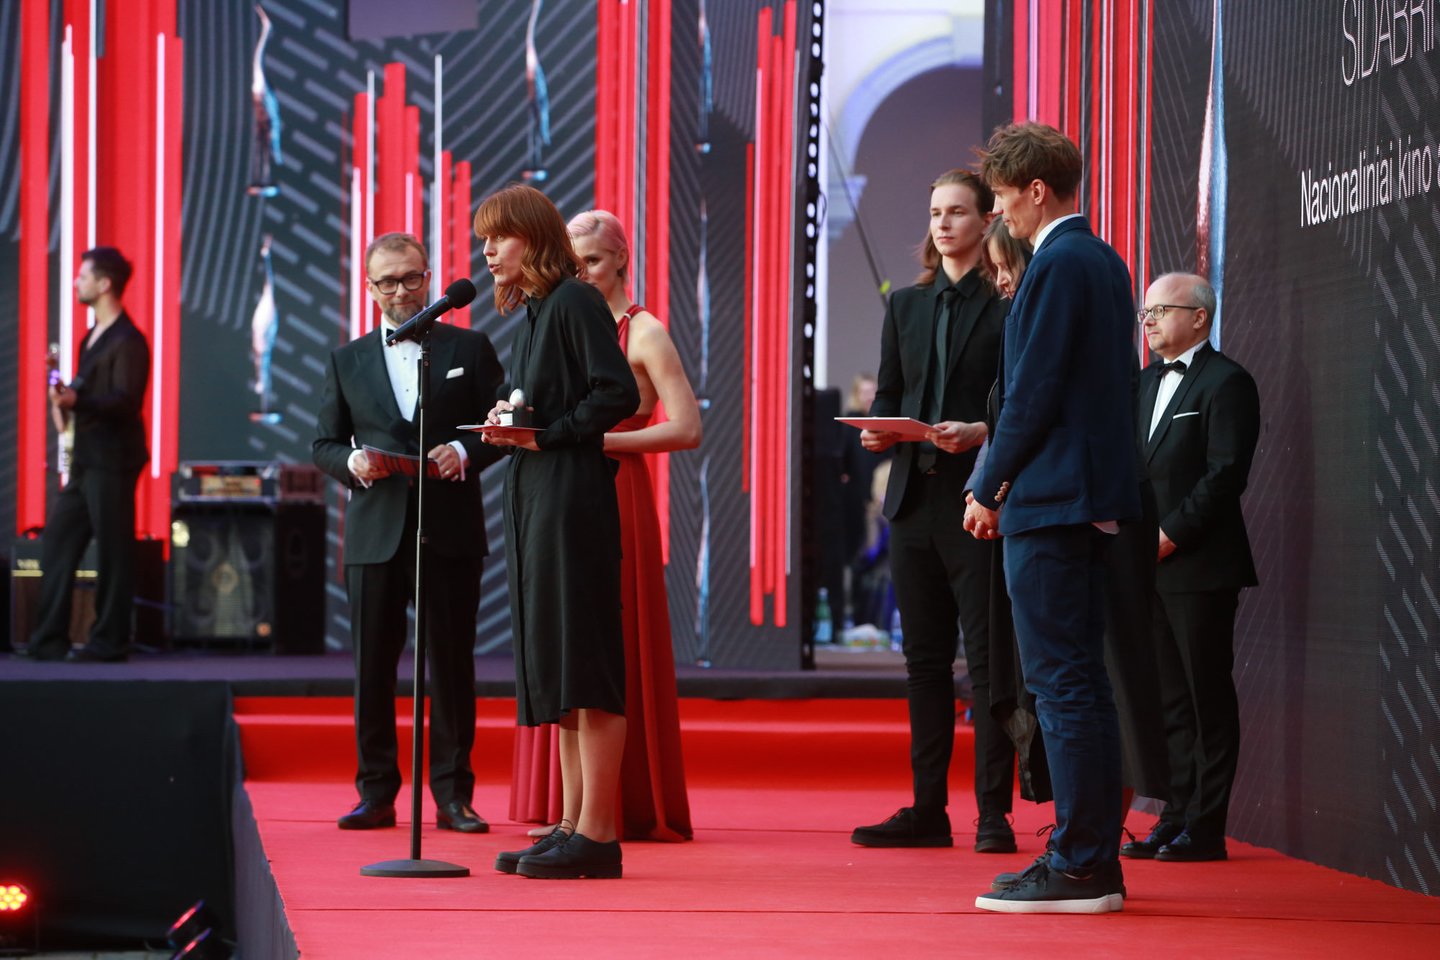 Nacionalinių kino apdovanojimų ceremonija Valdovų rūmų kieme.<br>R.Danisevičiaus nuotr.